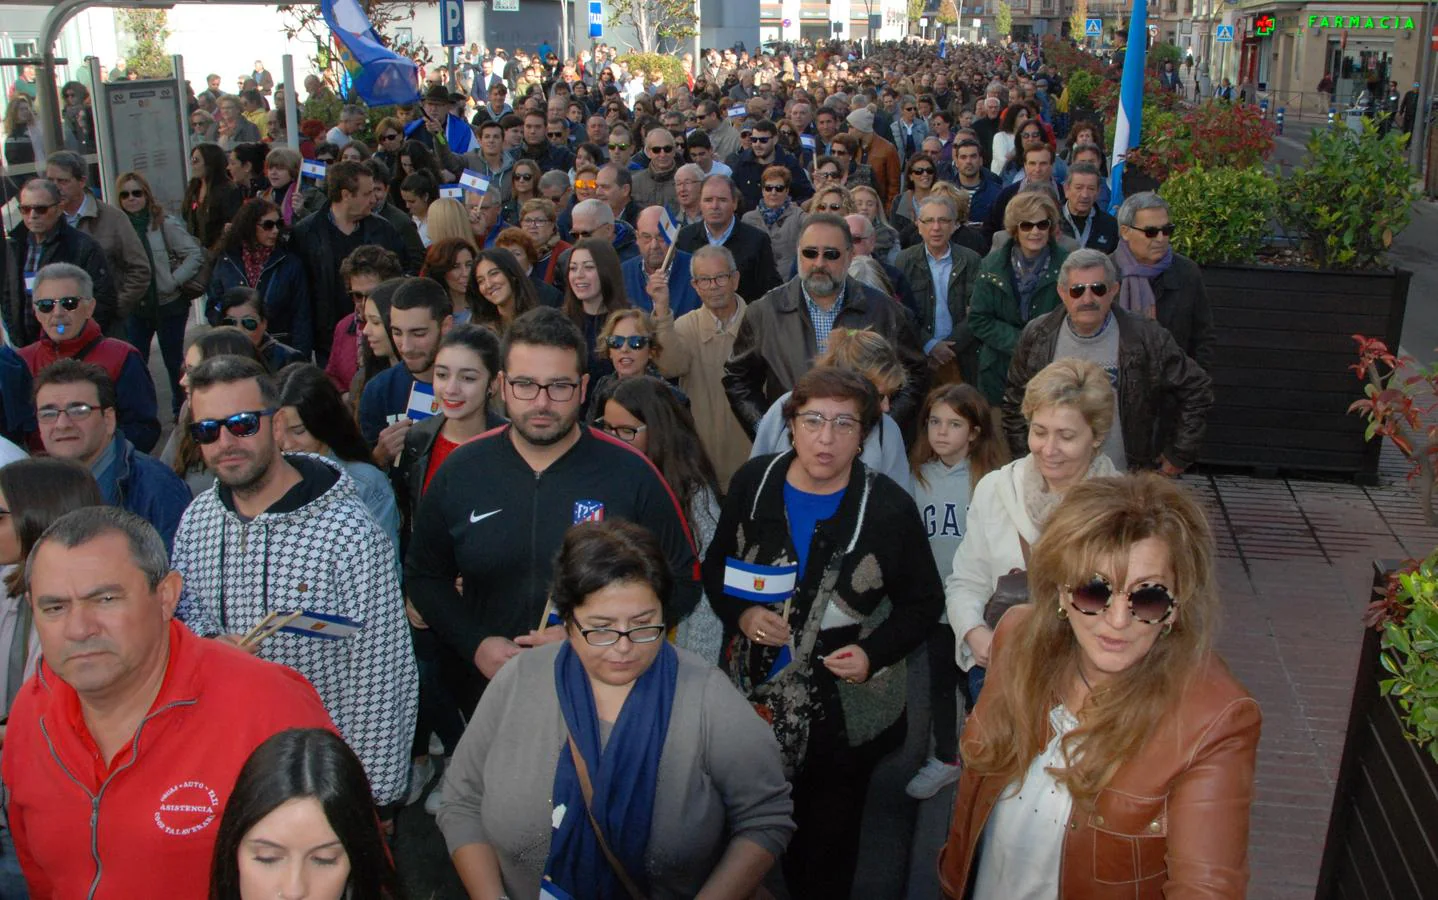 Multitudinaria manifestación en defensa de Talavera